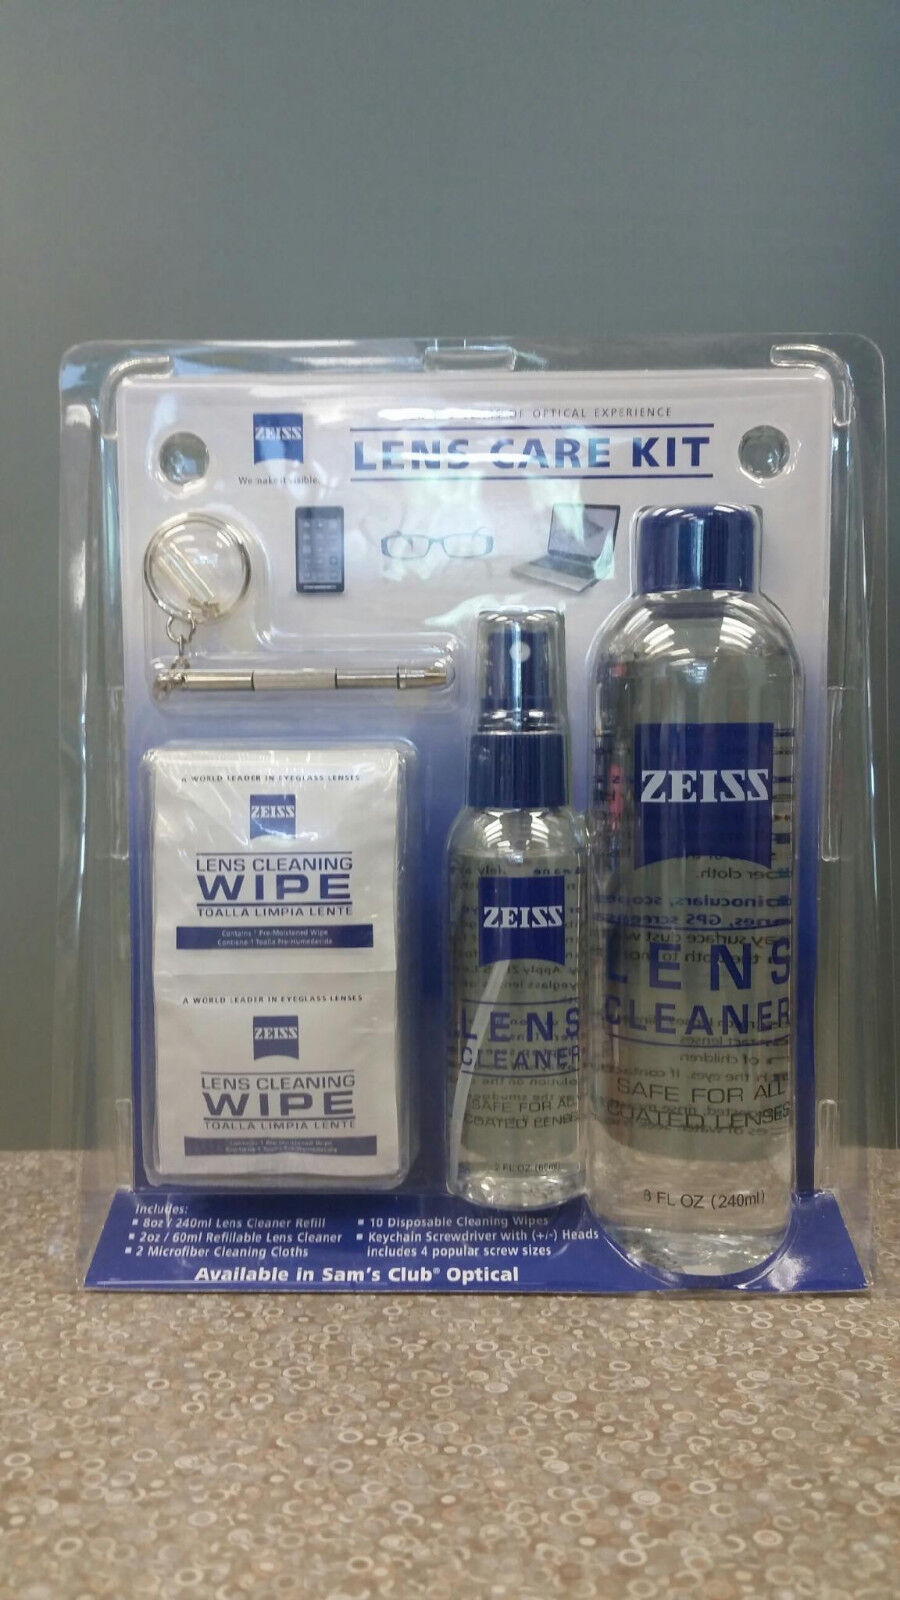 Zeiss Lens Care Kit - 8oz Lens Cleaner Refill, 2oz Refillabl